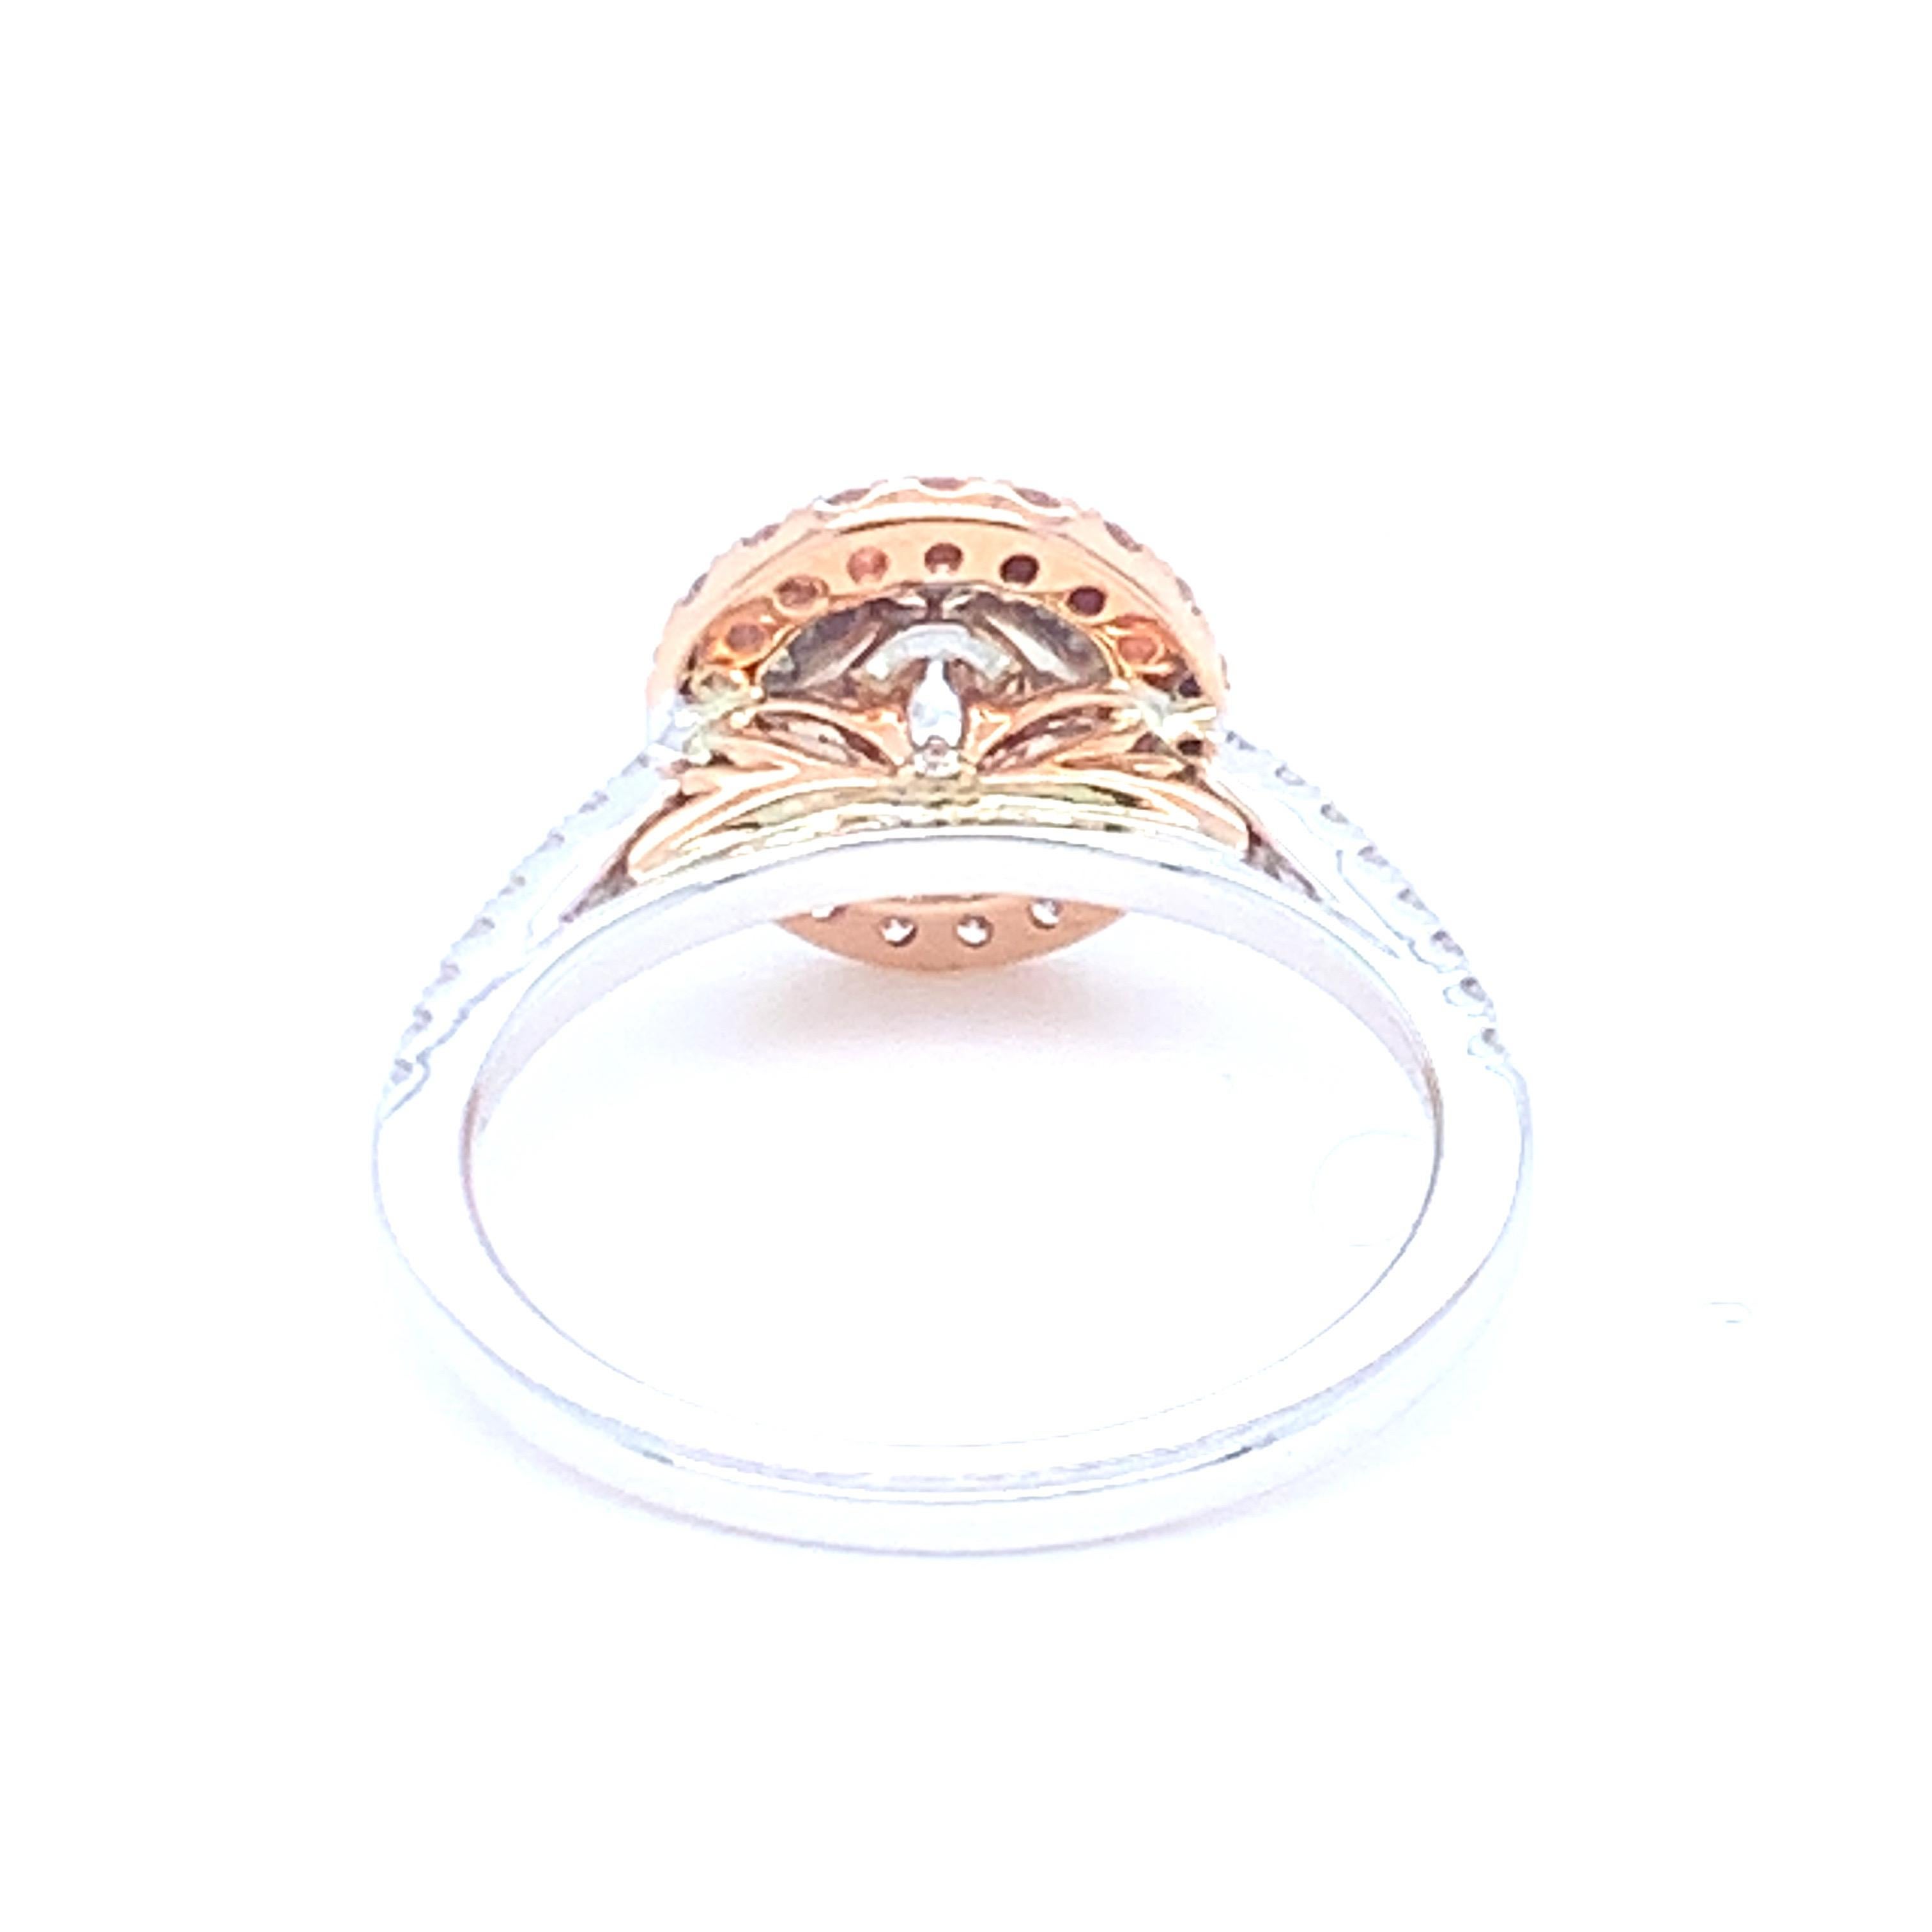 0.58 Carat Round White Diamond Pink Diamond Halo Ring Set in 14 Karat Gold For Sale 1